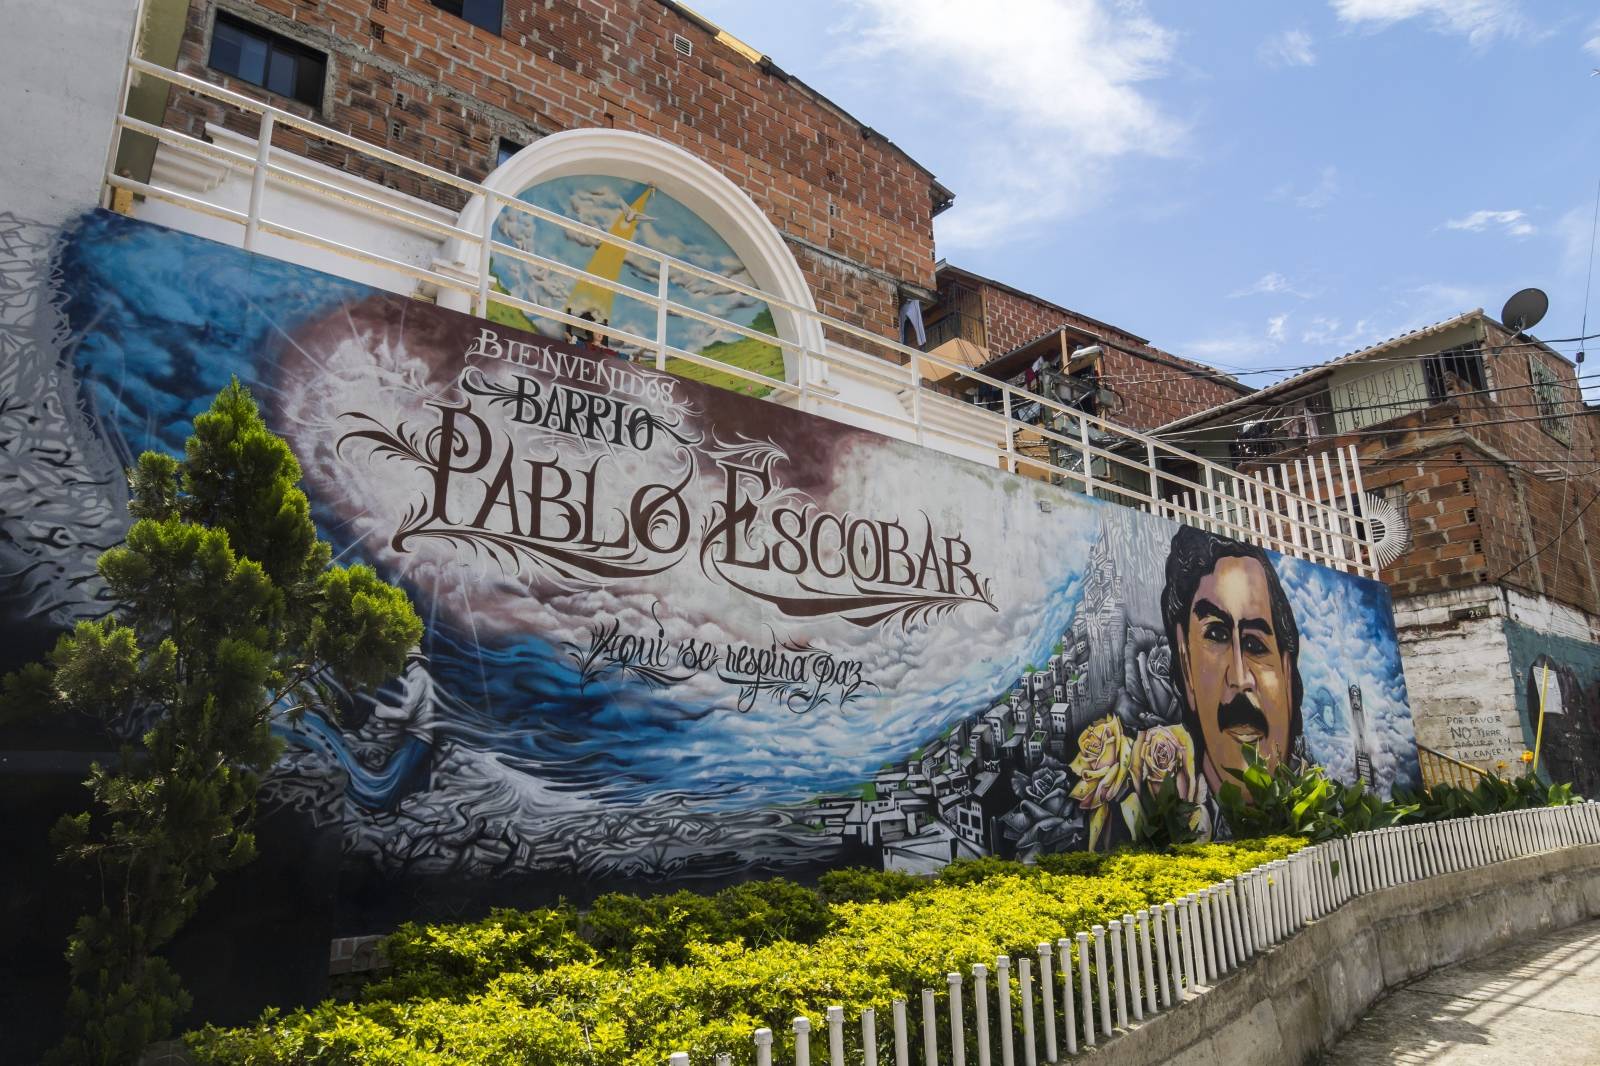 25. Day of death Pablo Escobar